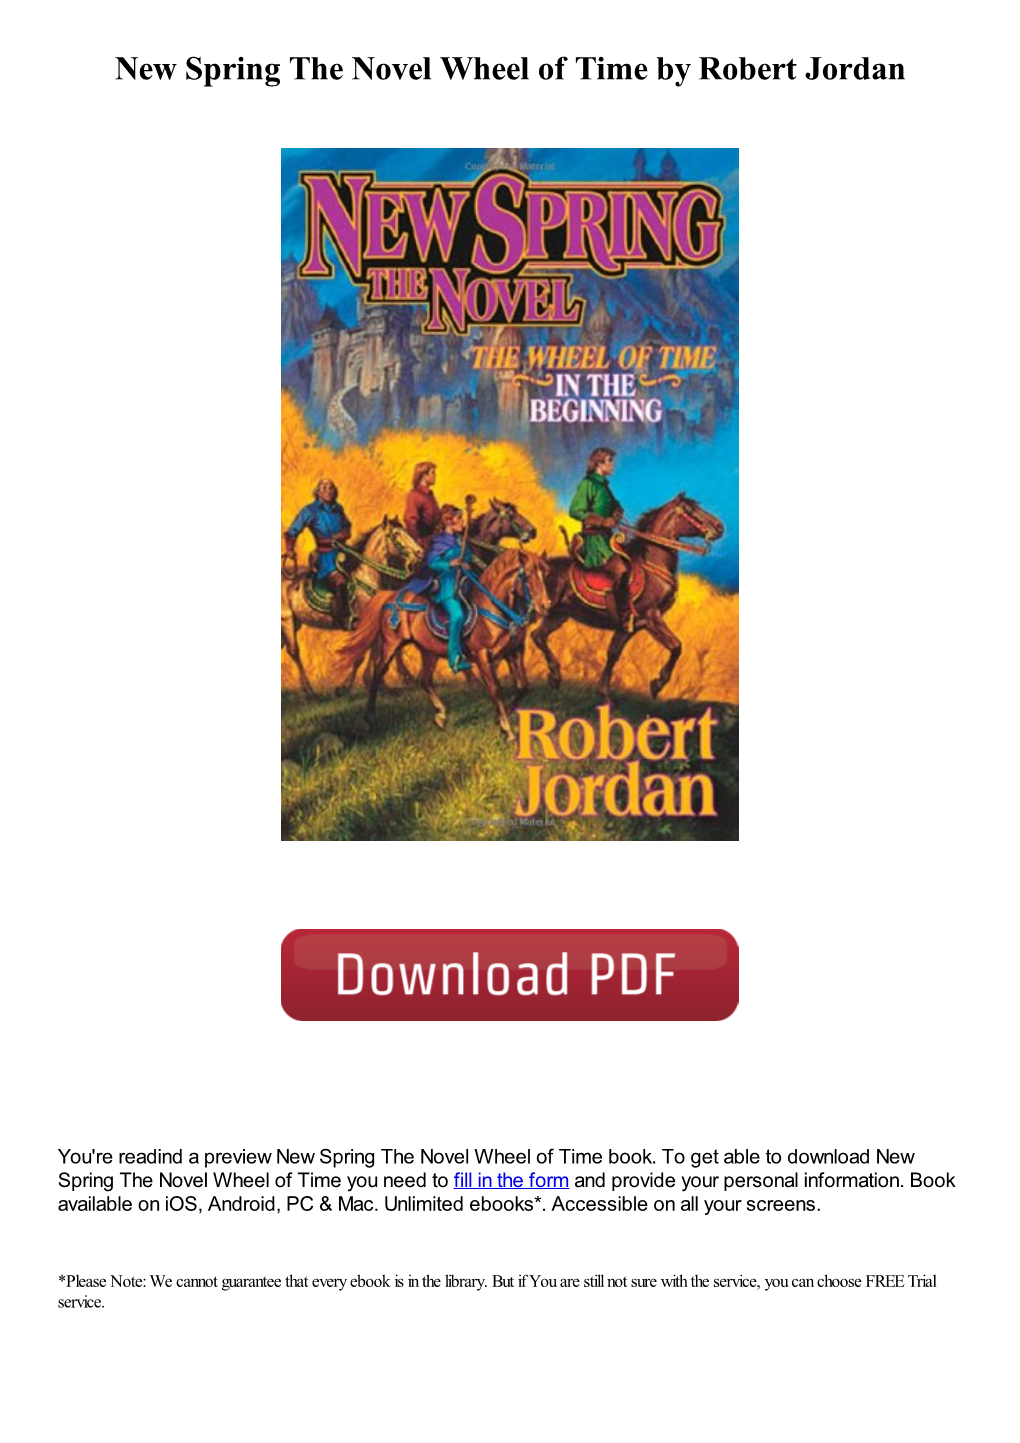 New Spring the Novel Wheel of Time by Robert Jordan